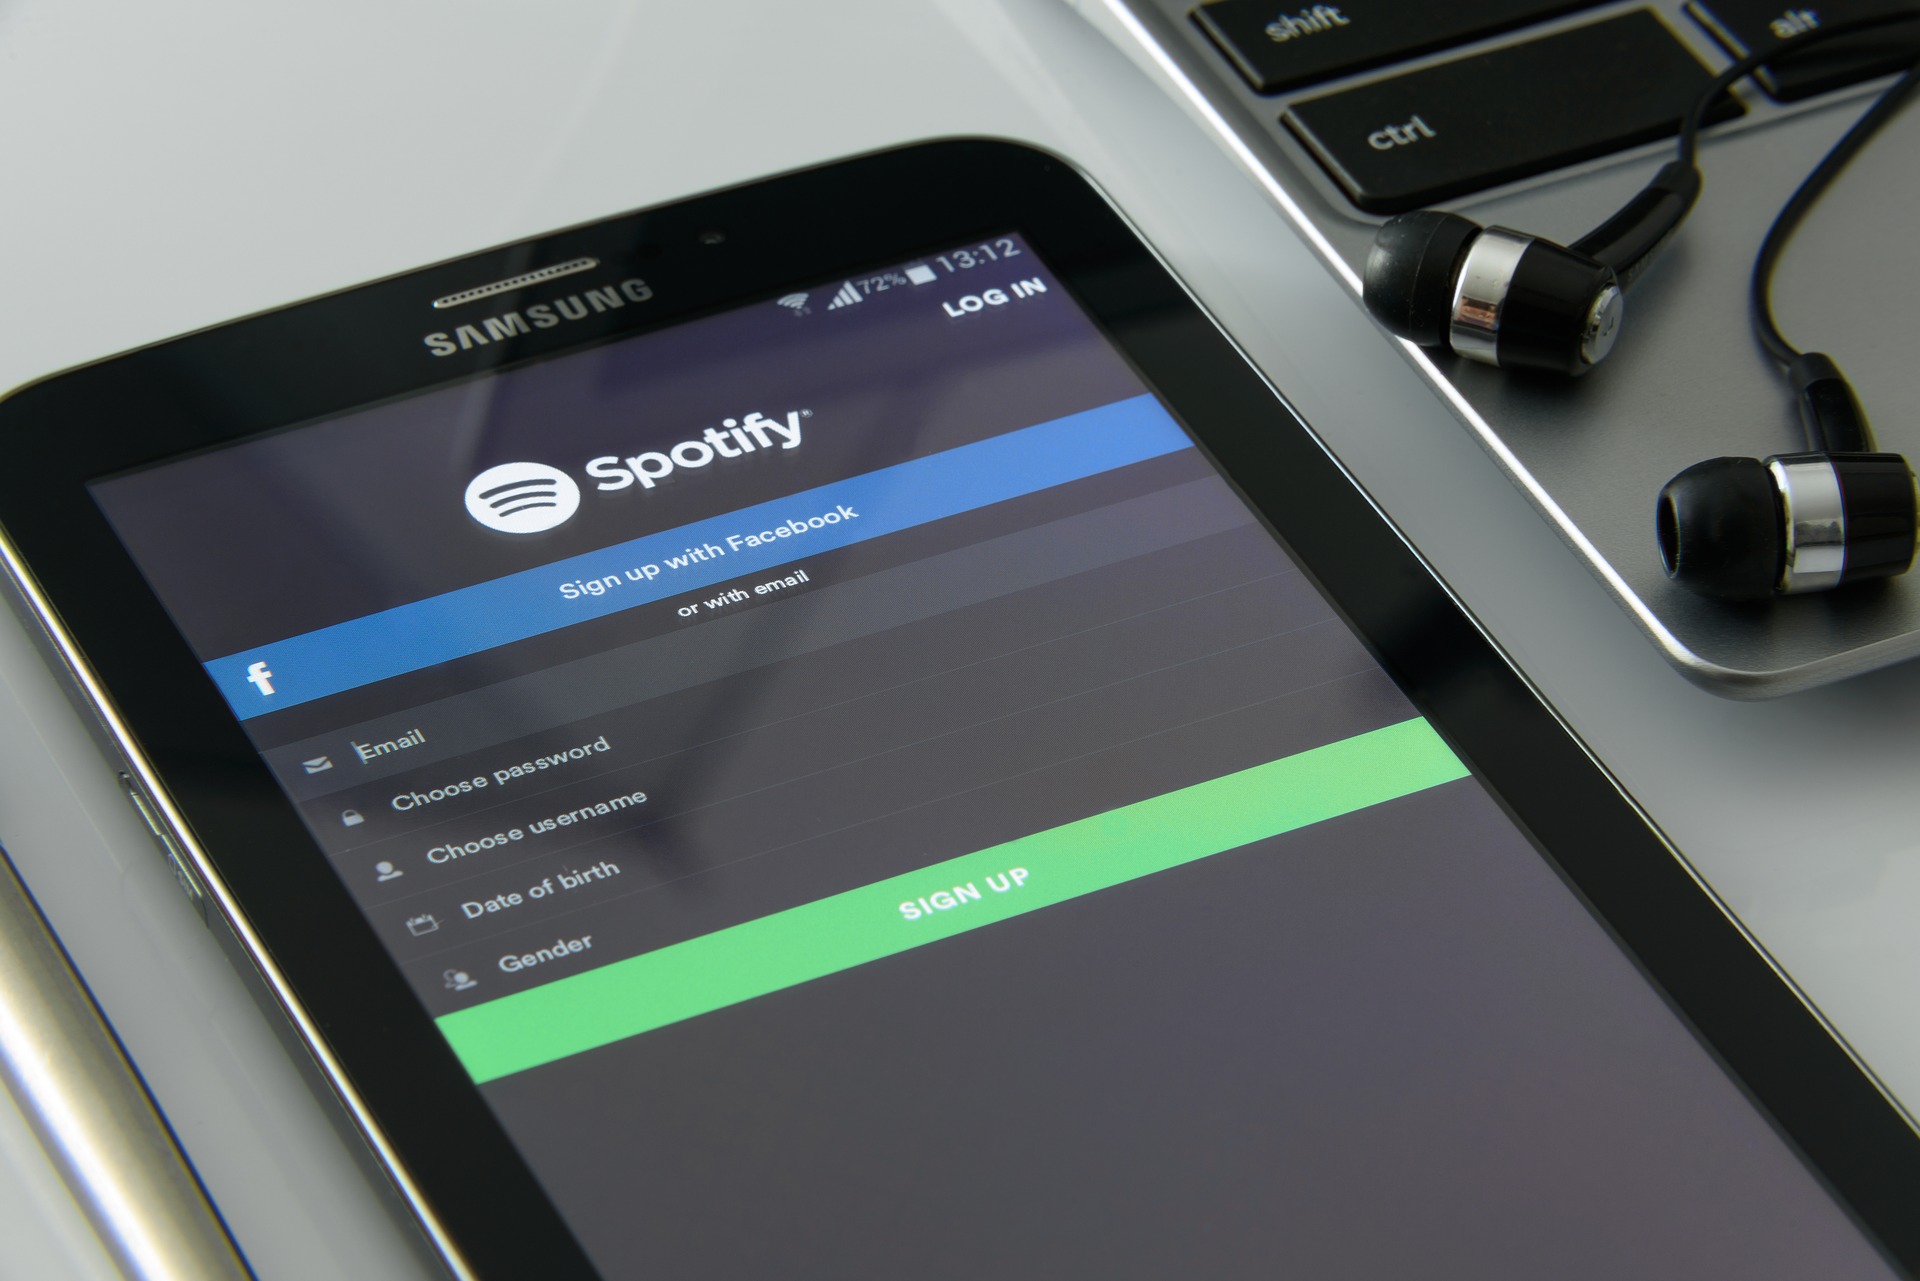 Spotify registra prejuízo de 209 milhões de euros no 4T19